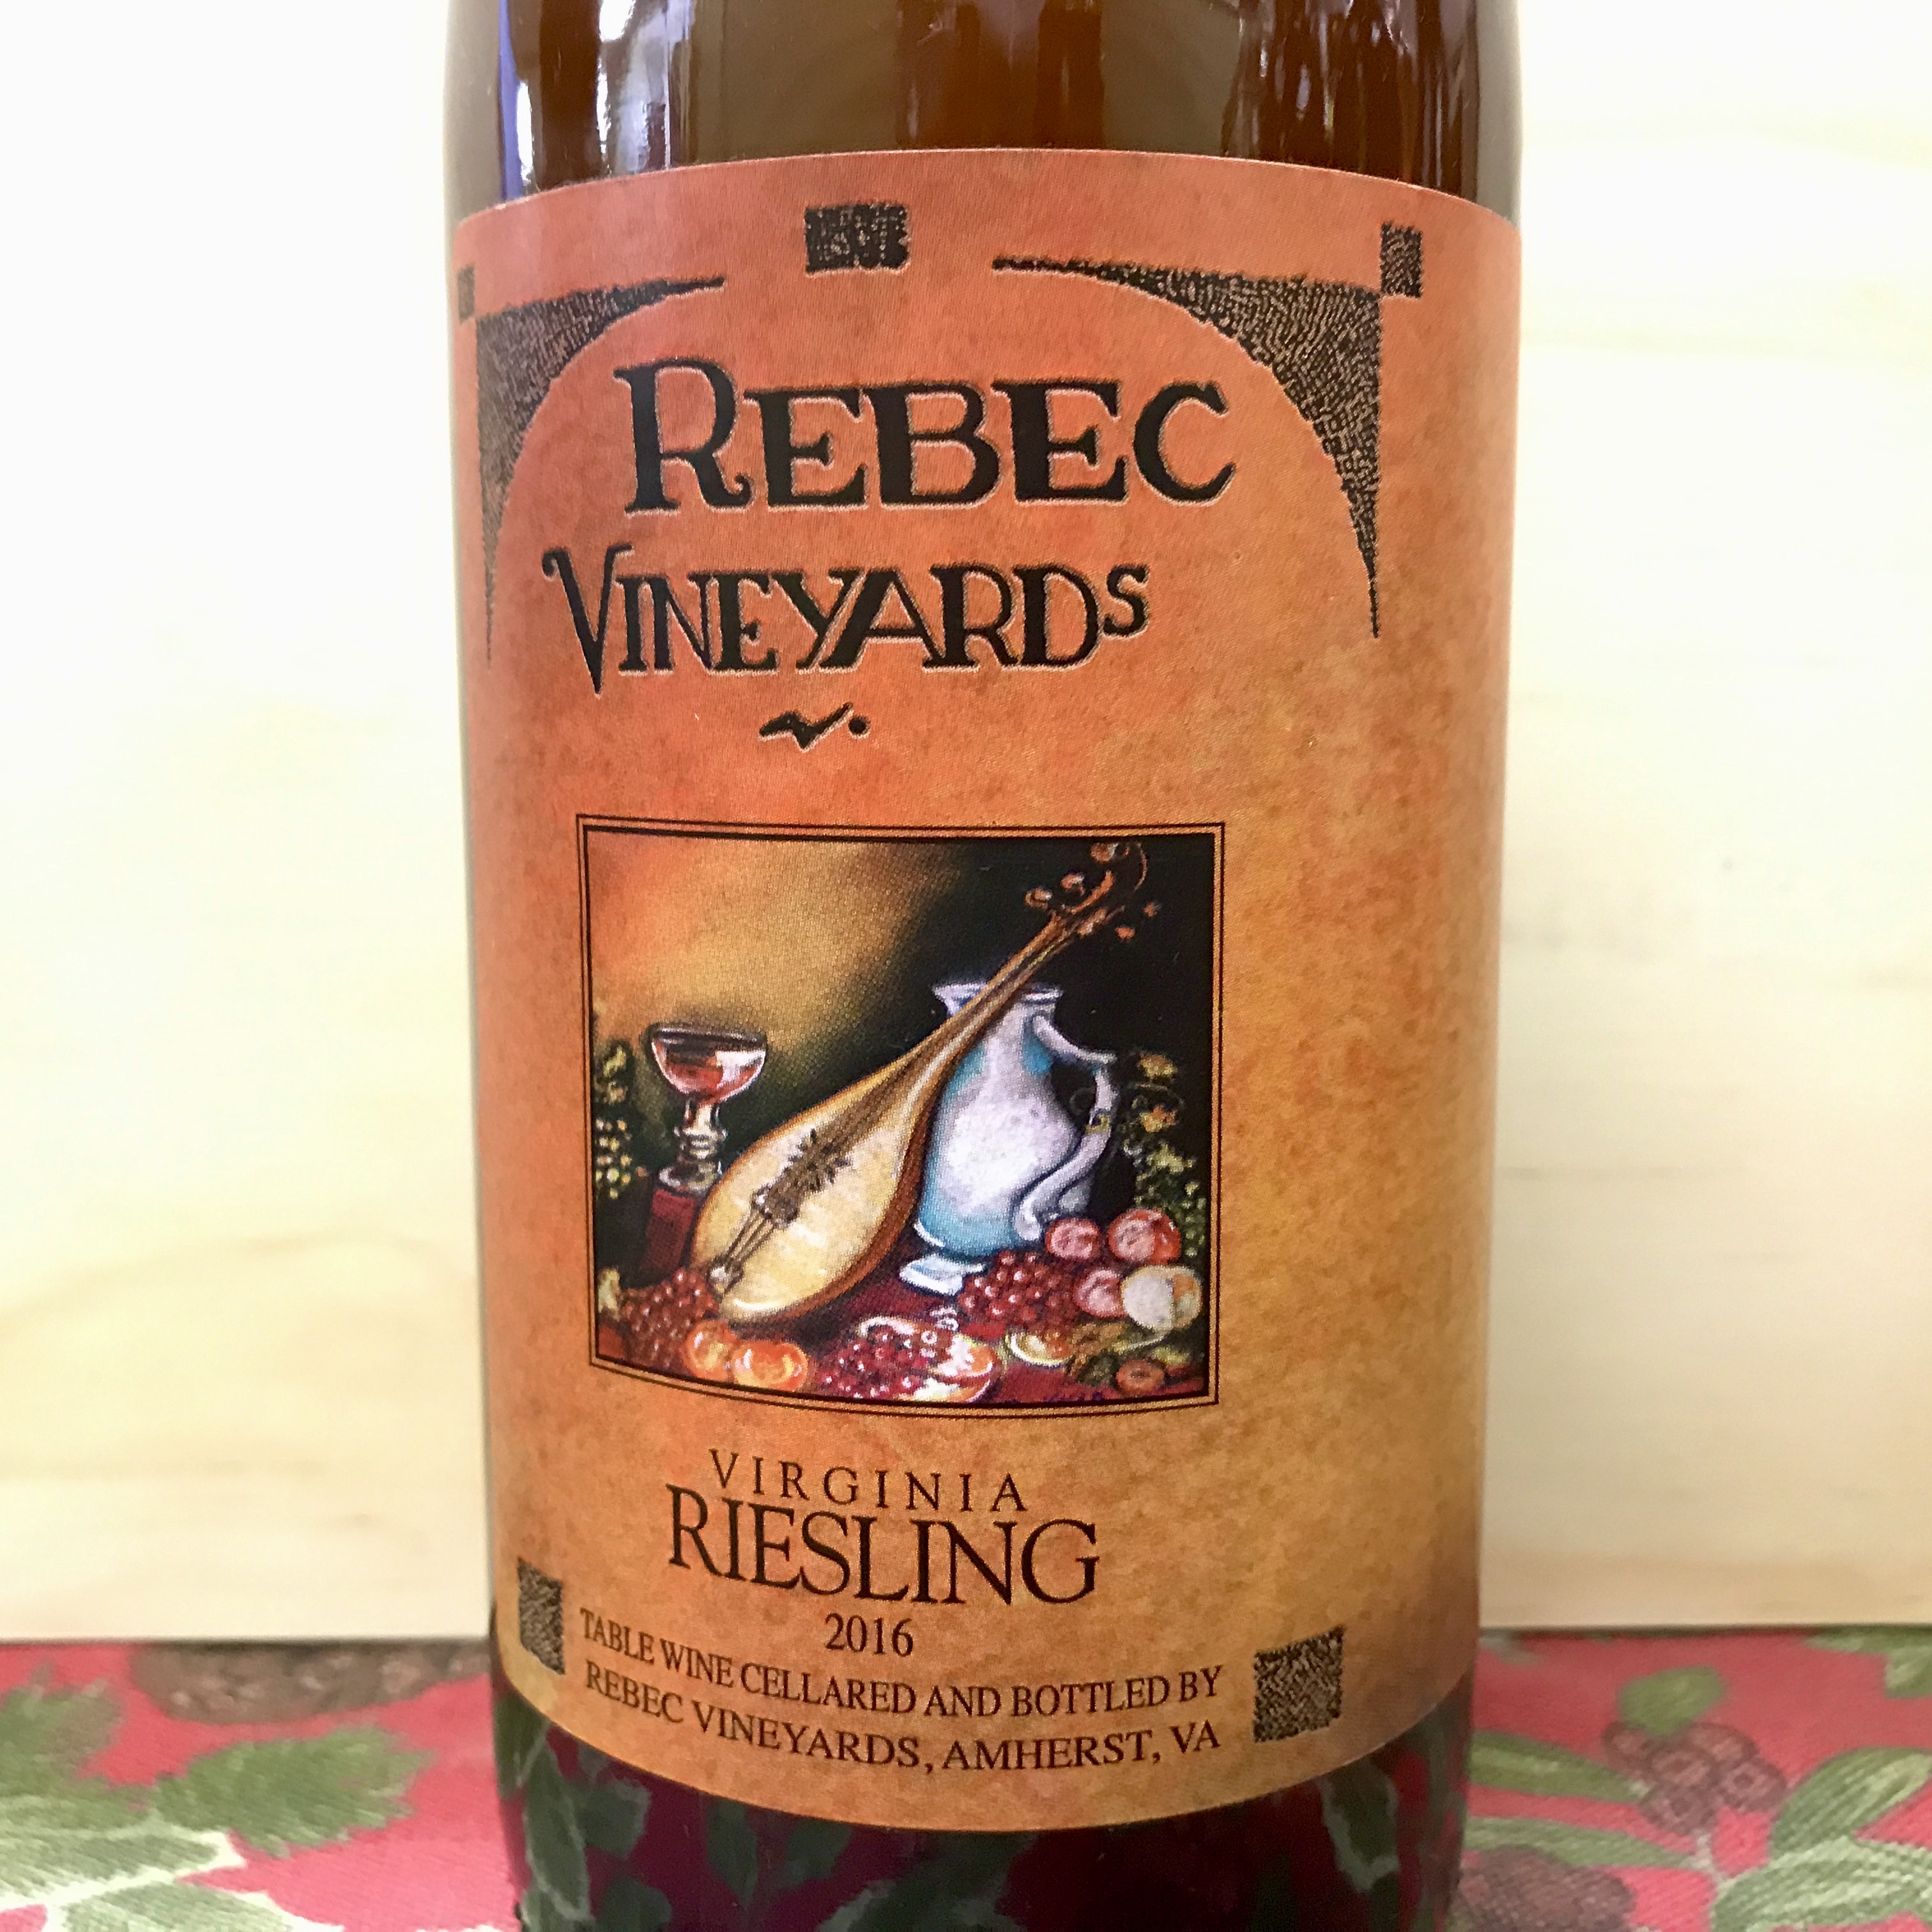 Rebec Vineyards Riesling 2016